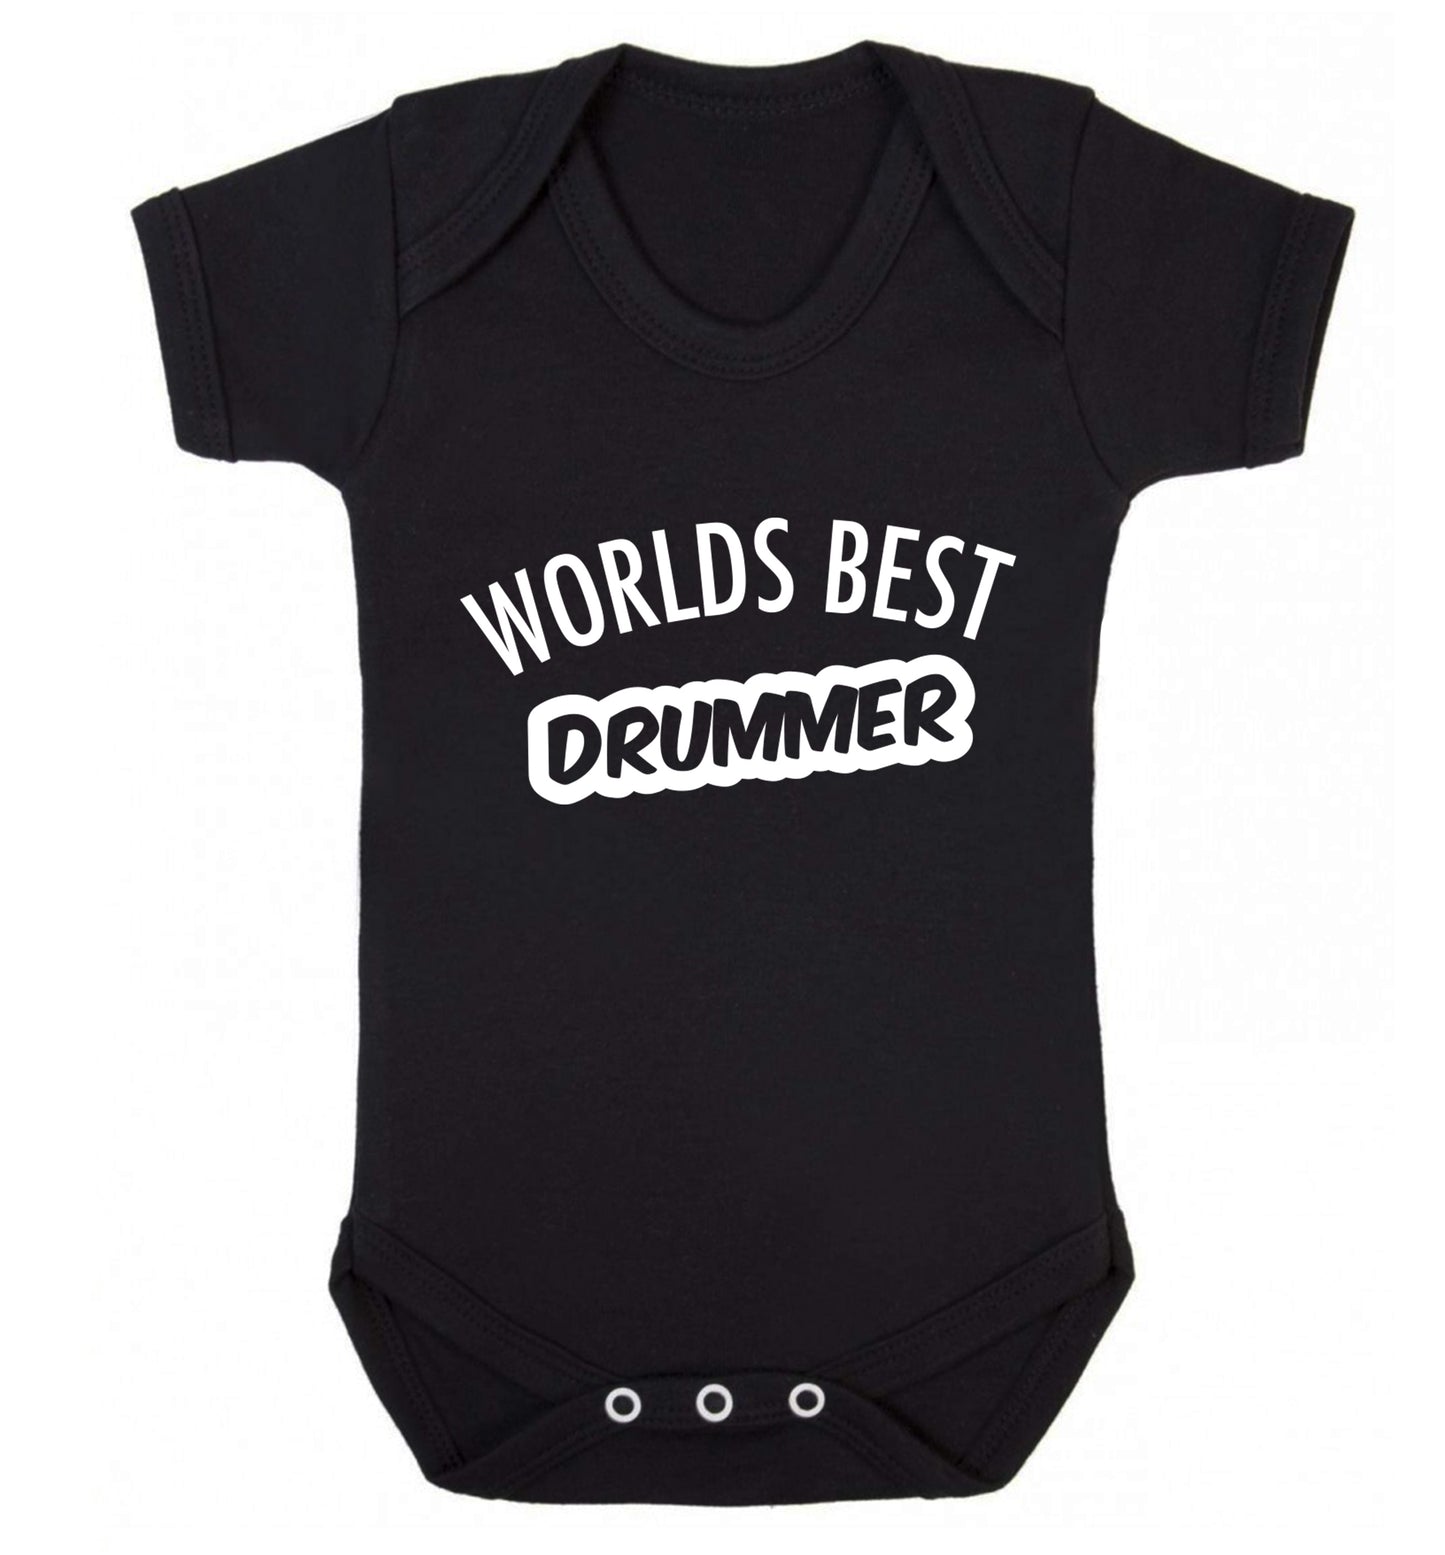 Worlds best drummer Baby Vest black 18-24 months